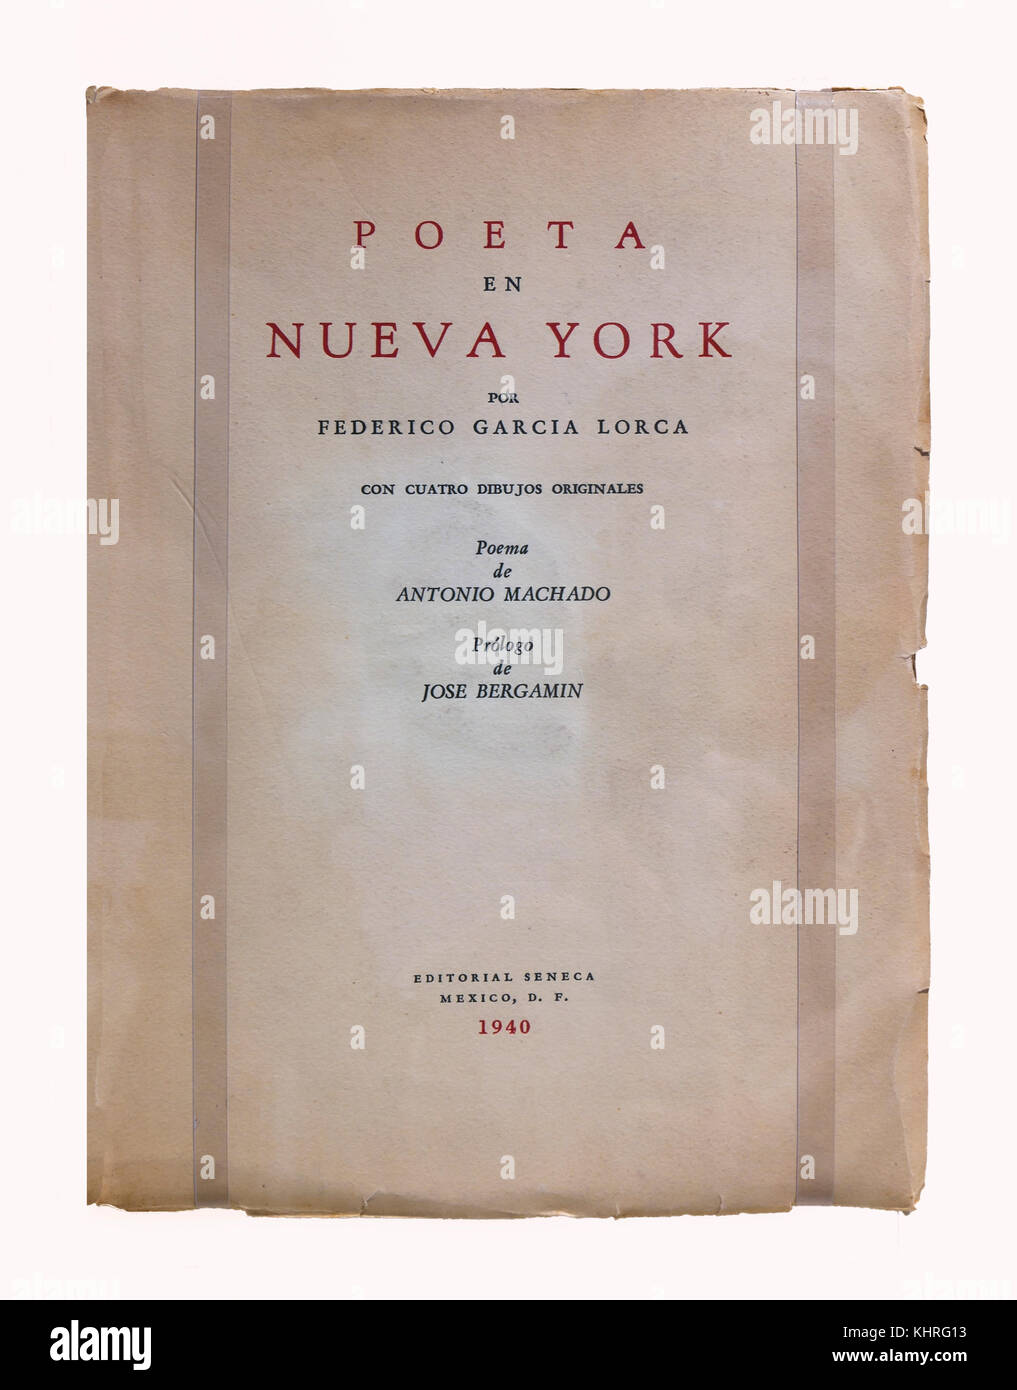 Luogo di nascita - museo del poeta Federico Garcia Lorca, libro "poeta en Nueva York', fuente vaqueros, provincia di Granada, regione dell'Andalusia, Spagna, euro Foto Stock